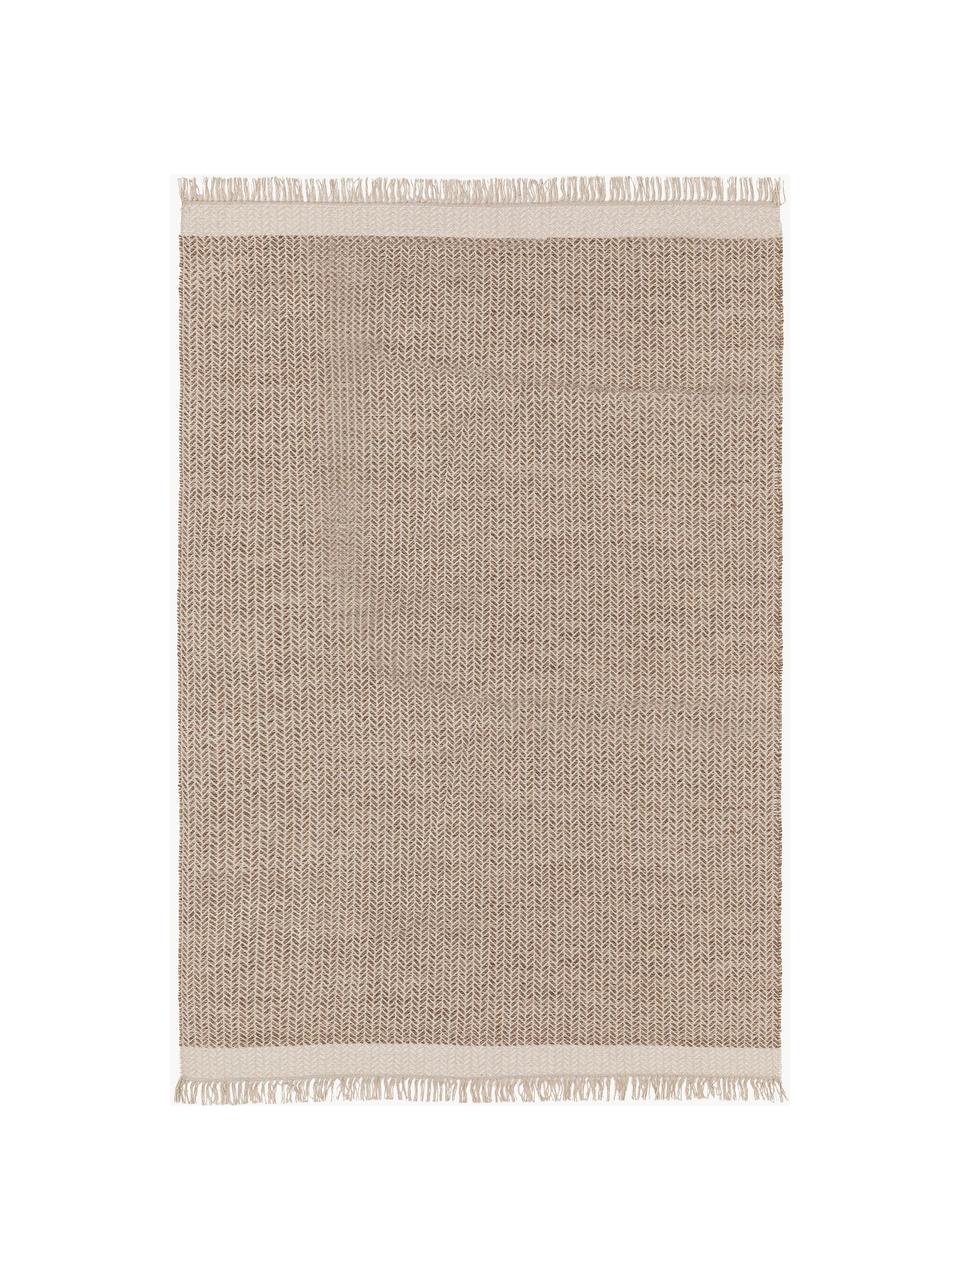 Ručně tkaný vlněný koberec s třásněmi Kim, 80 % vlna, 20 % bavlna

V prvních týdnech používání vlněných koberců se může objevit charakteristický jev uvolňování vláken, který po několika týdnech používání zmizí., Odstíny béžové, Š 200 cm, D 300 cm (velikost L)